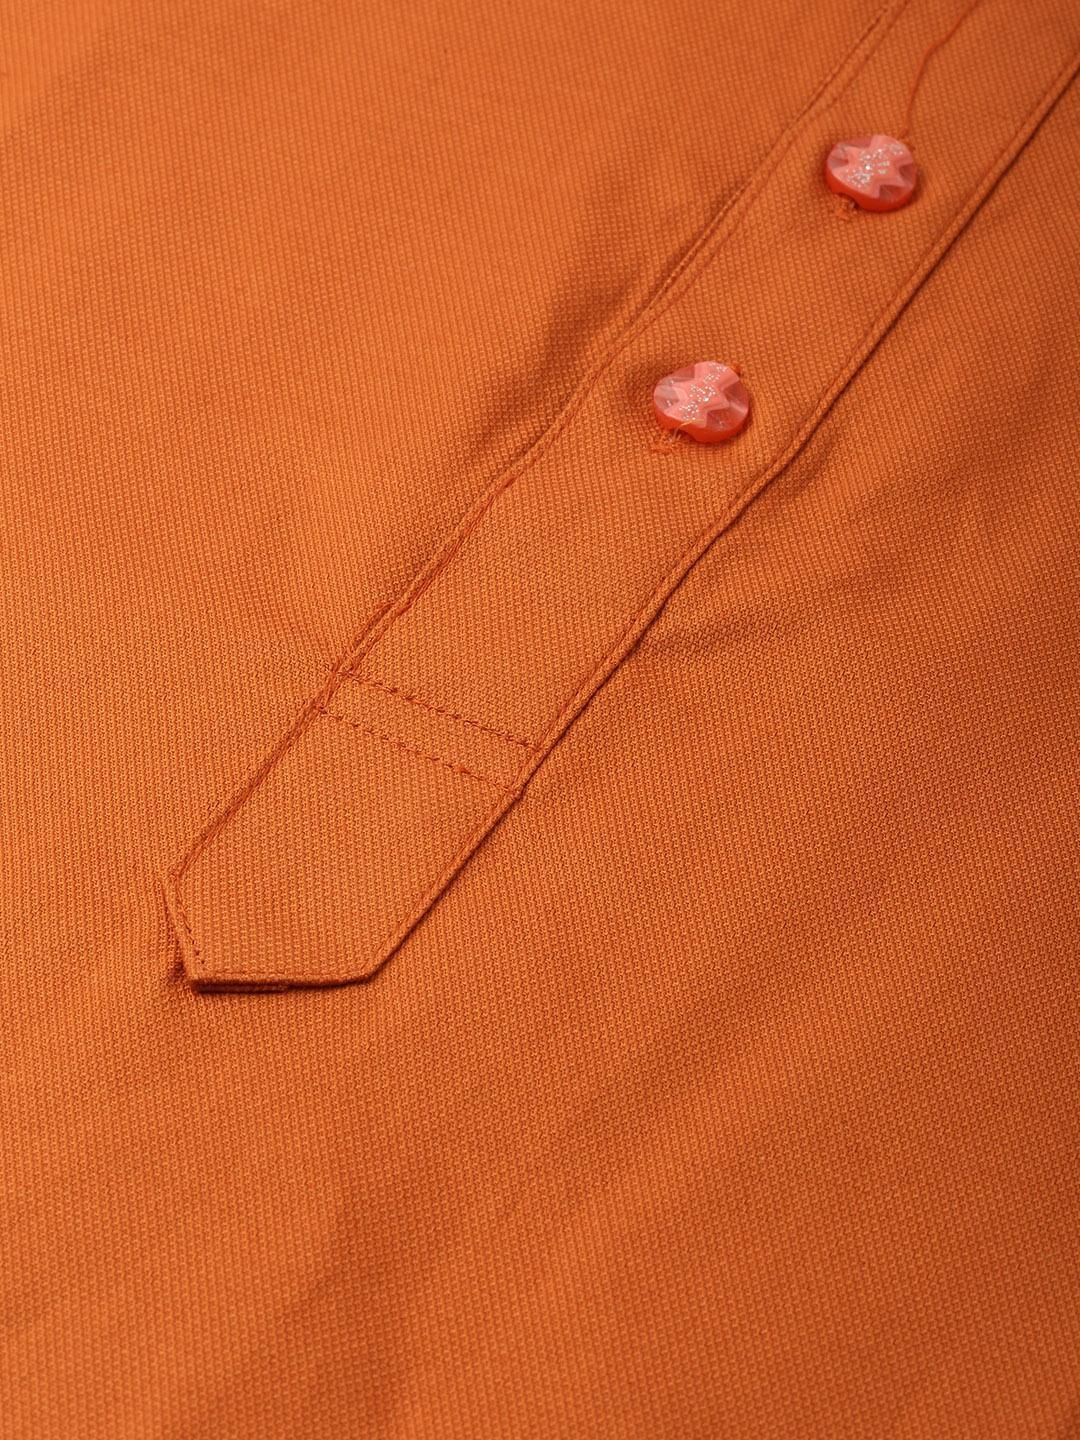 Rust Orange Textured Premium Cotton Kurta